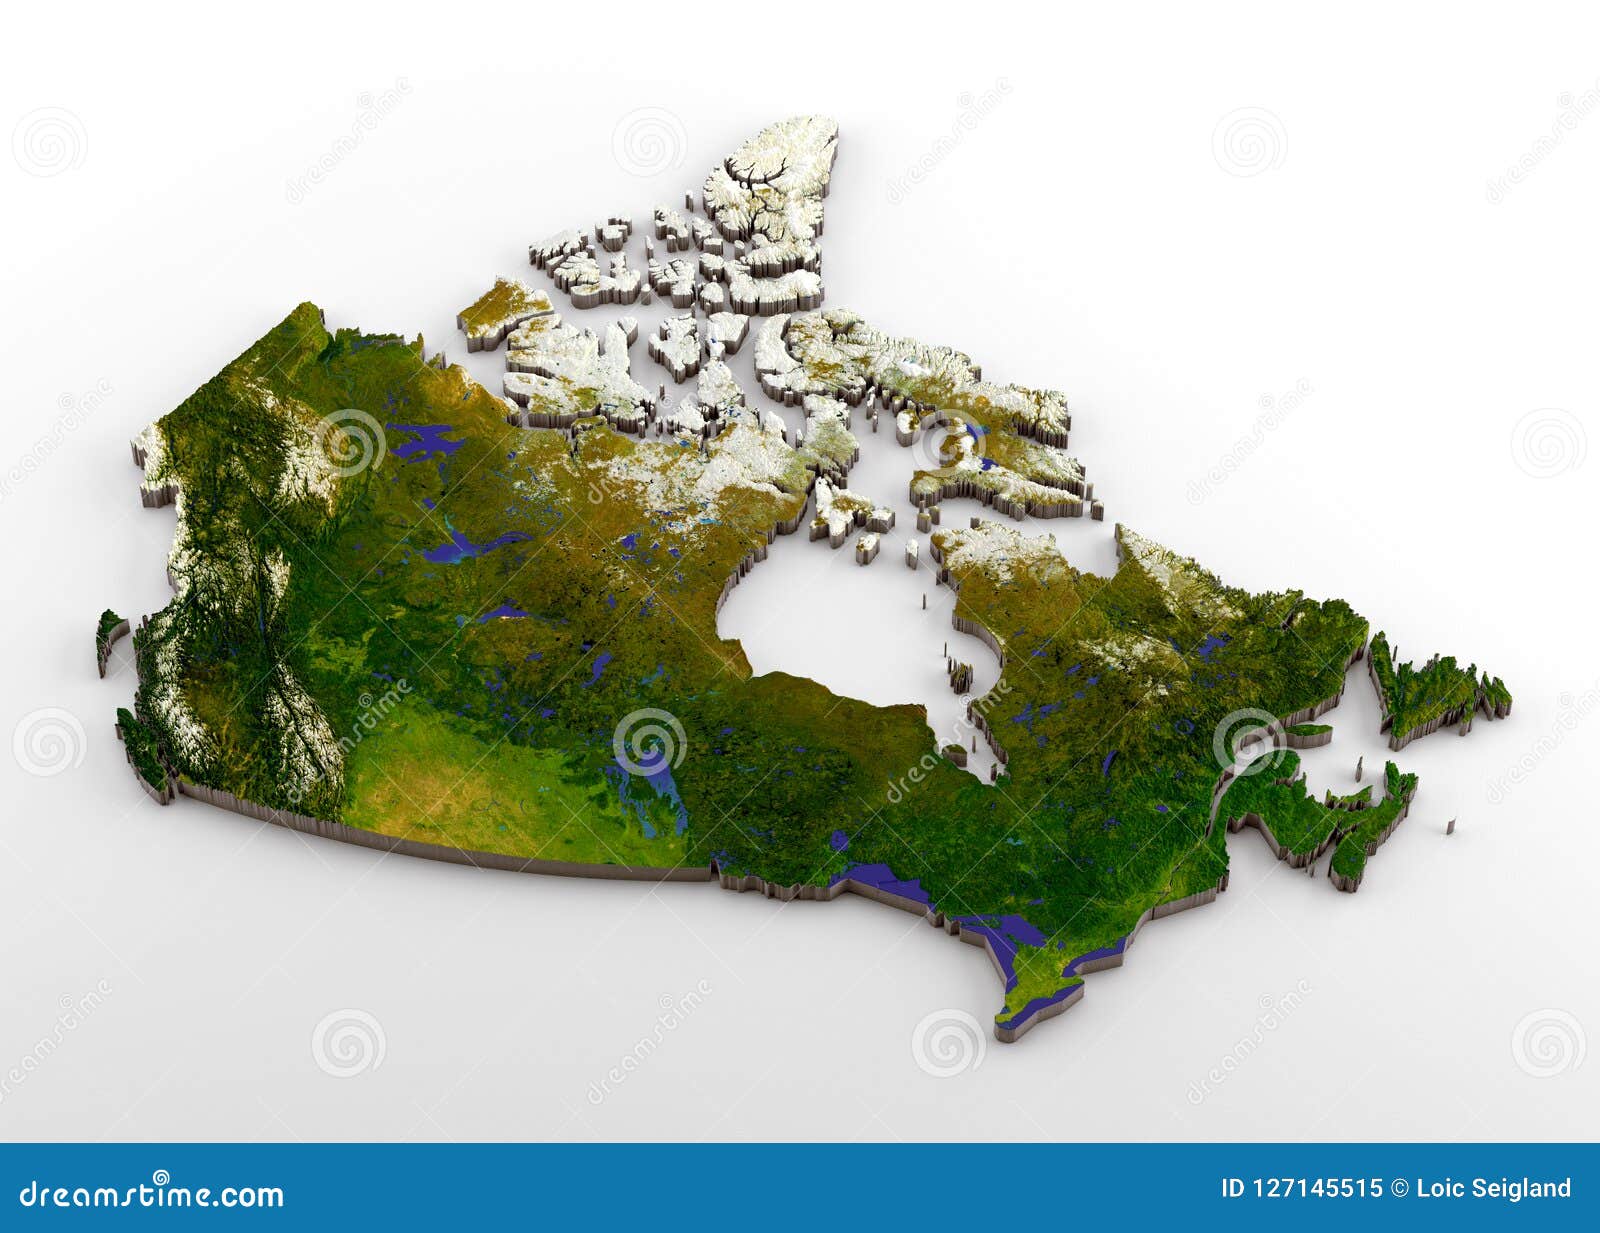 Канада 3. Карта Канады 3д. Рельефная карта Канады. Рельеф Канады карта. 3d физическая карта.